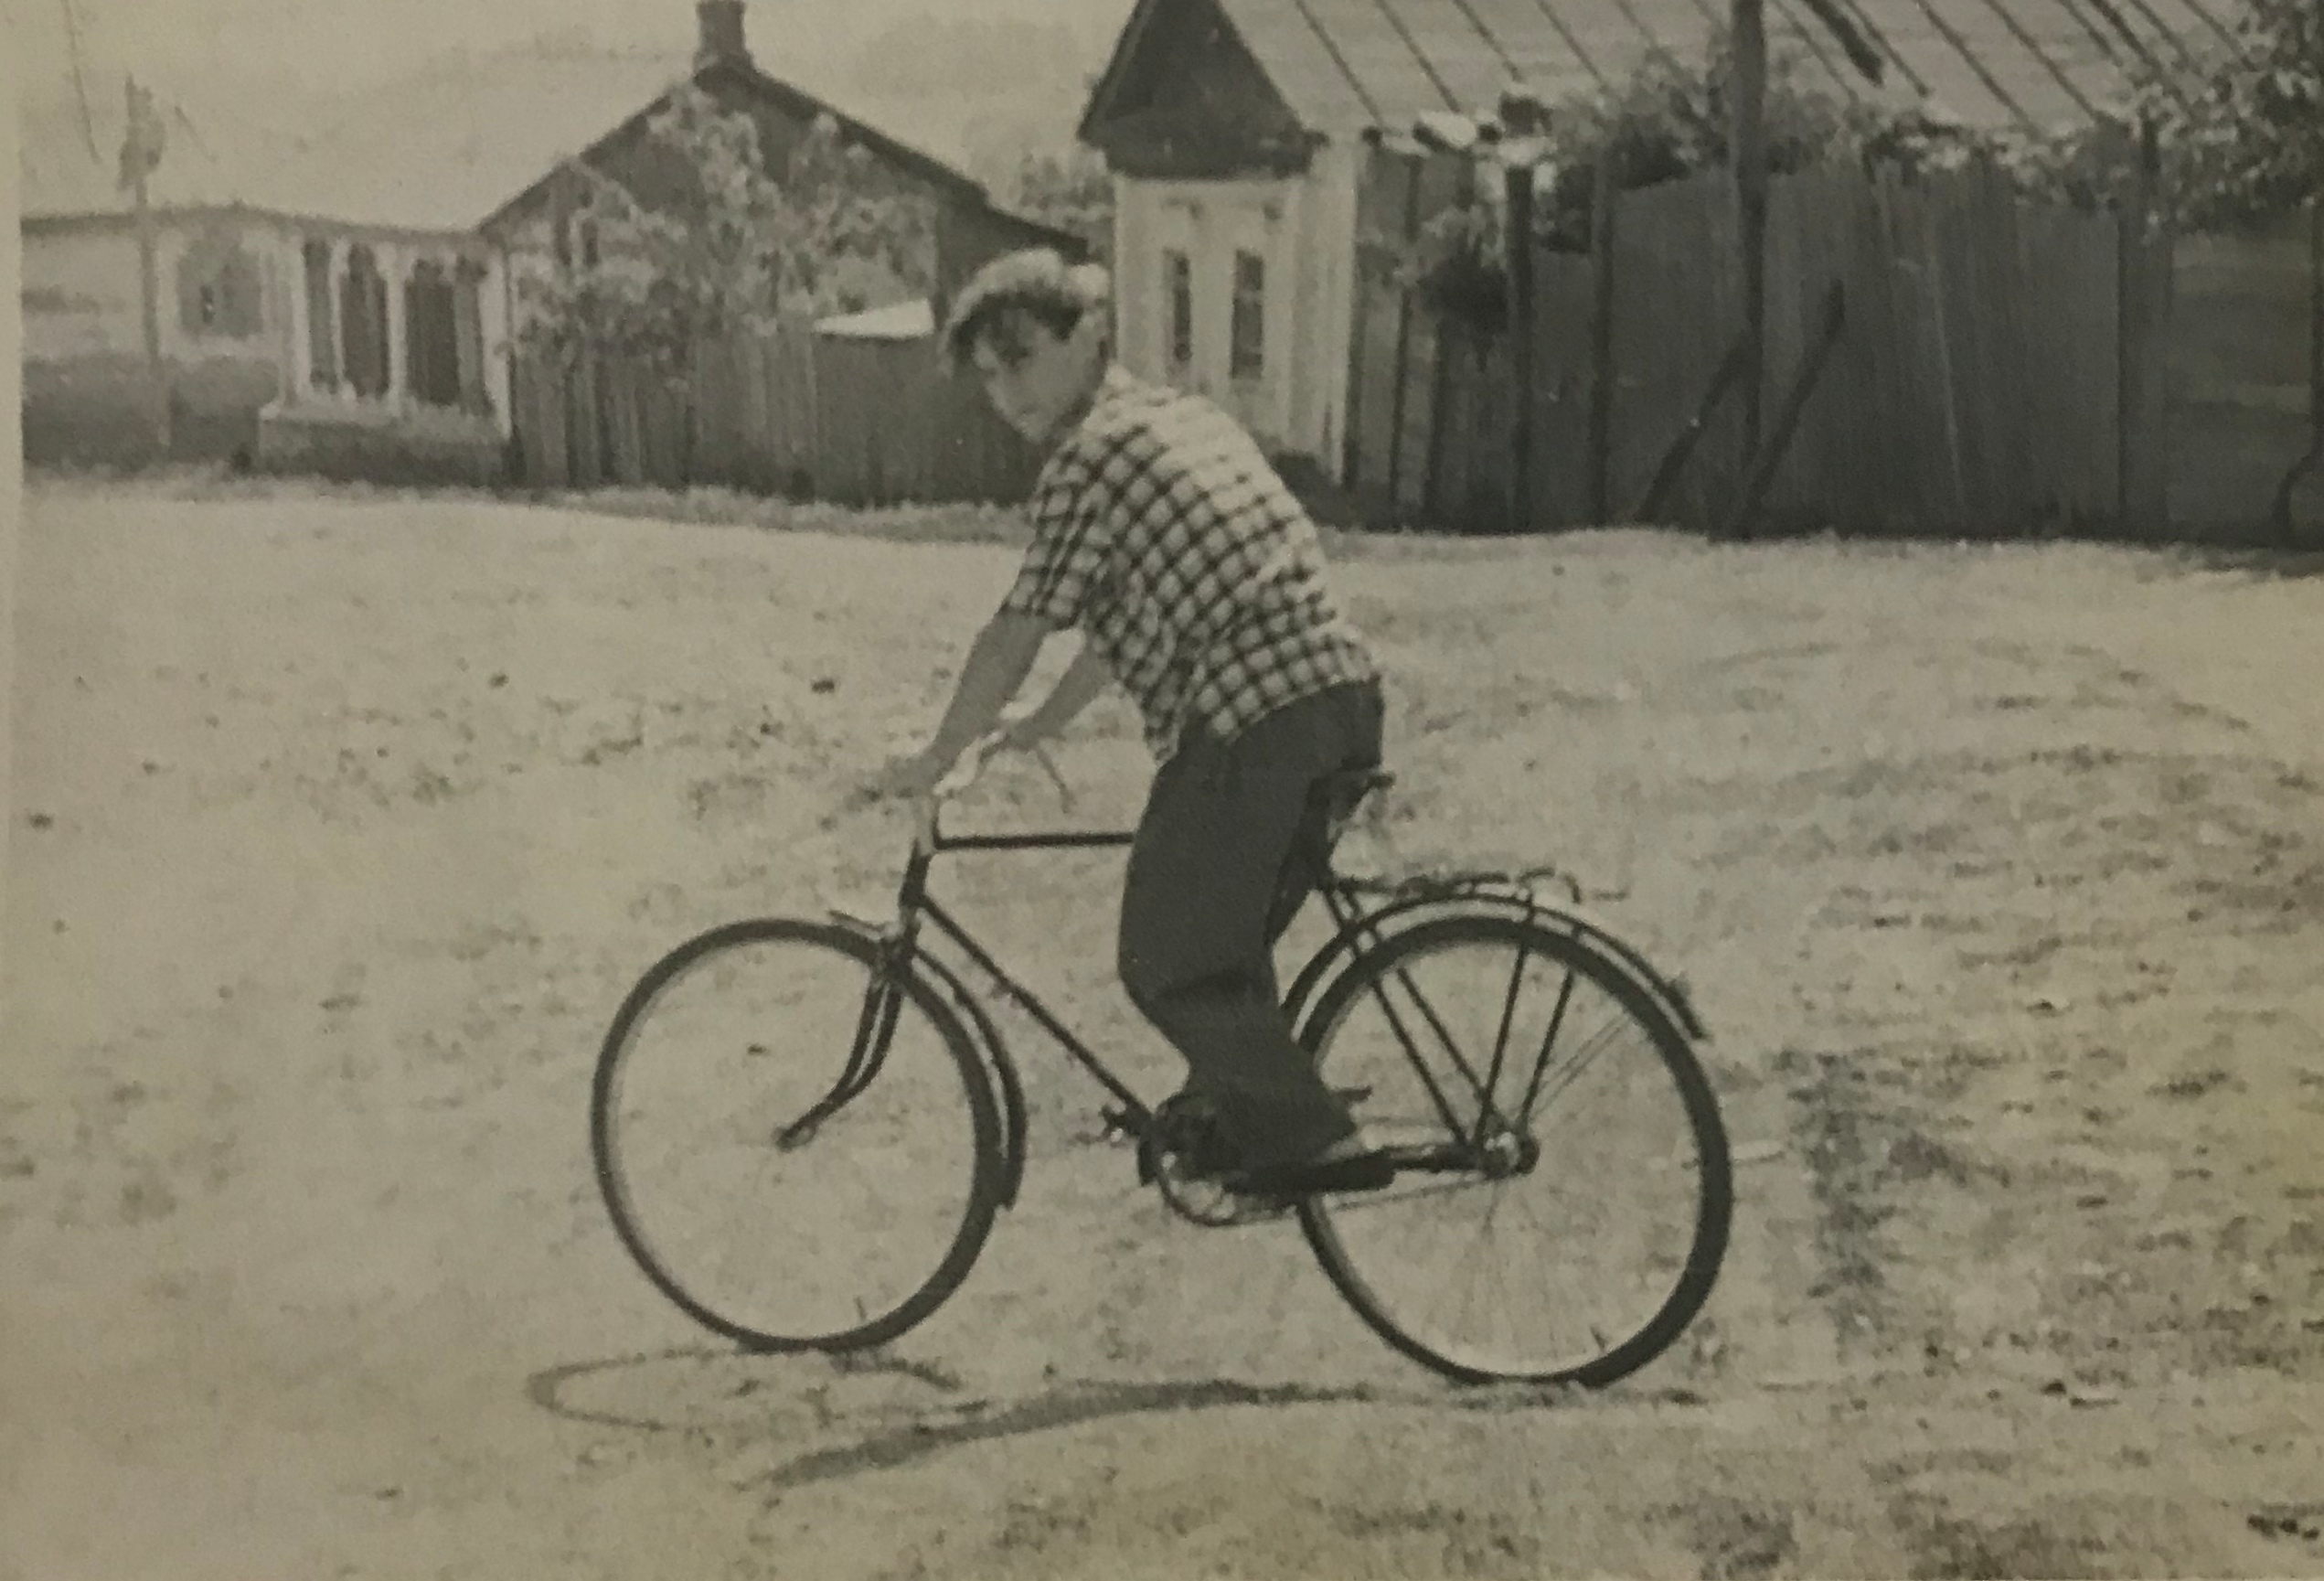 Несмотря на большие проблемы со здоровьем, Владик Трофимов от обычной для мальчишки жизни не отказывался и освоил велосипед, на котором совершал дальние путешествия. Фото из личного архива 